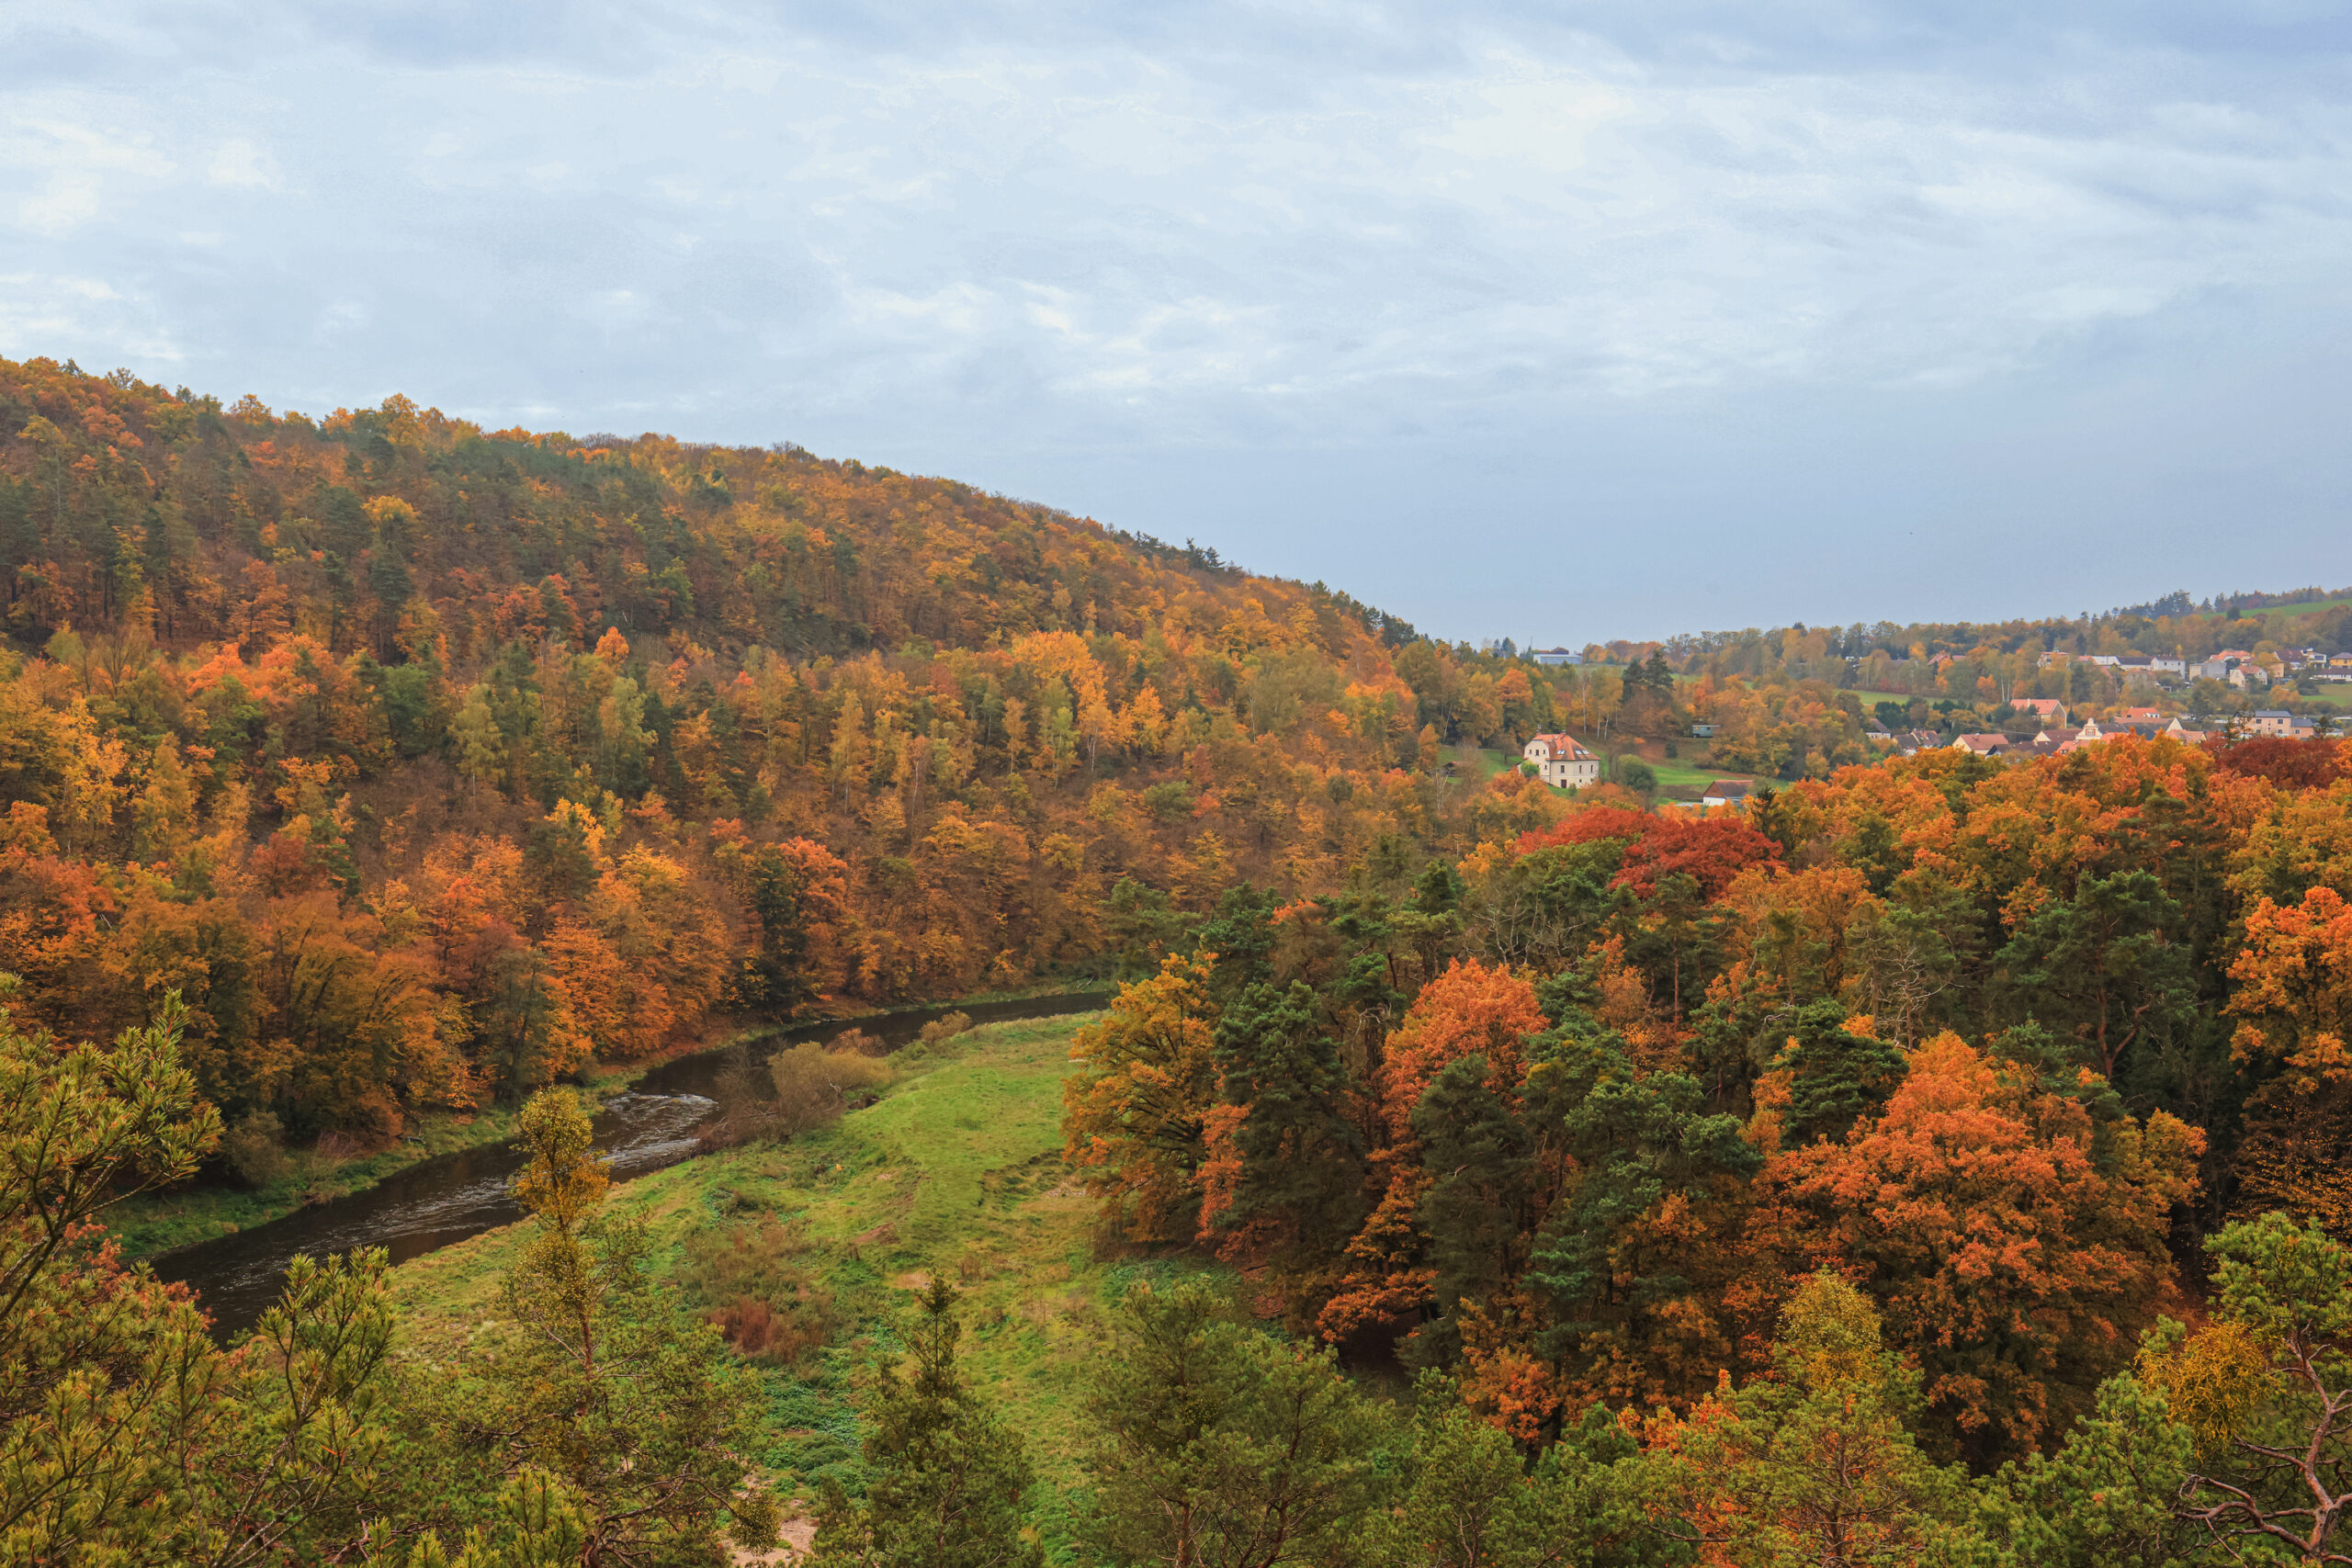 <h1>Zábělá – pohled z vyhlídky Kozí Bouda</h1><br />
Po obou stranách prochází zalesněné svahy lemující břehy Berounky. V pozadí vpravo zástavba Bukovce. Podzimní scenérie, listnaté stromy v nejrůznějších barvách – odstíny zelené, žluté, červené, oranžové, hnědé.